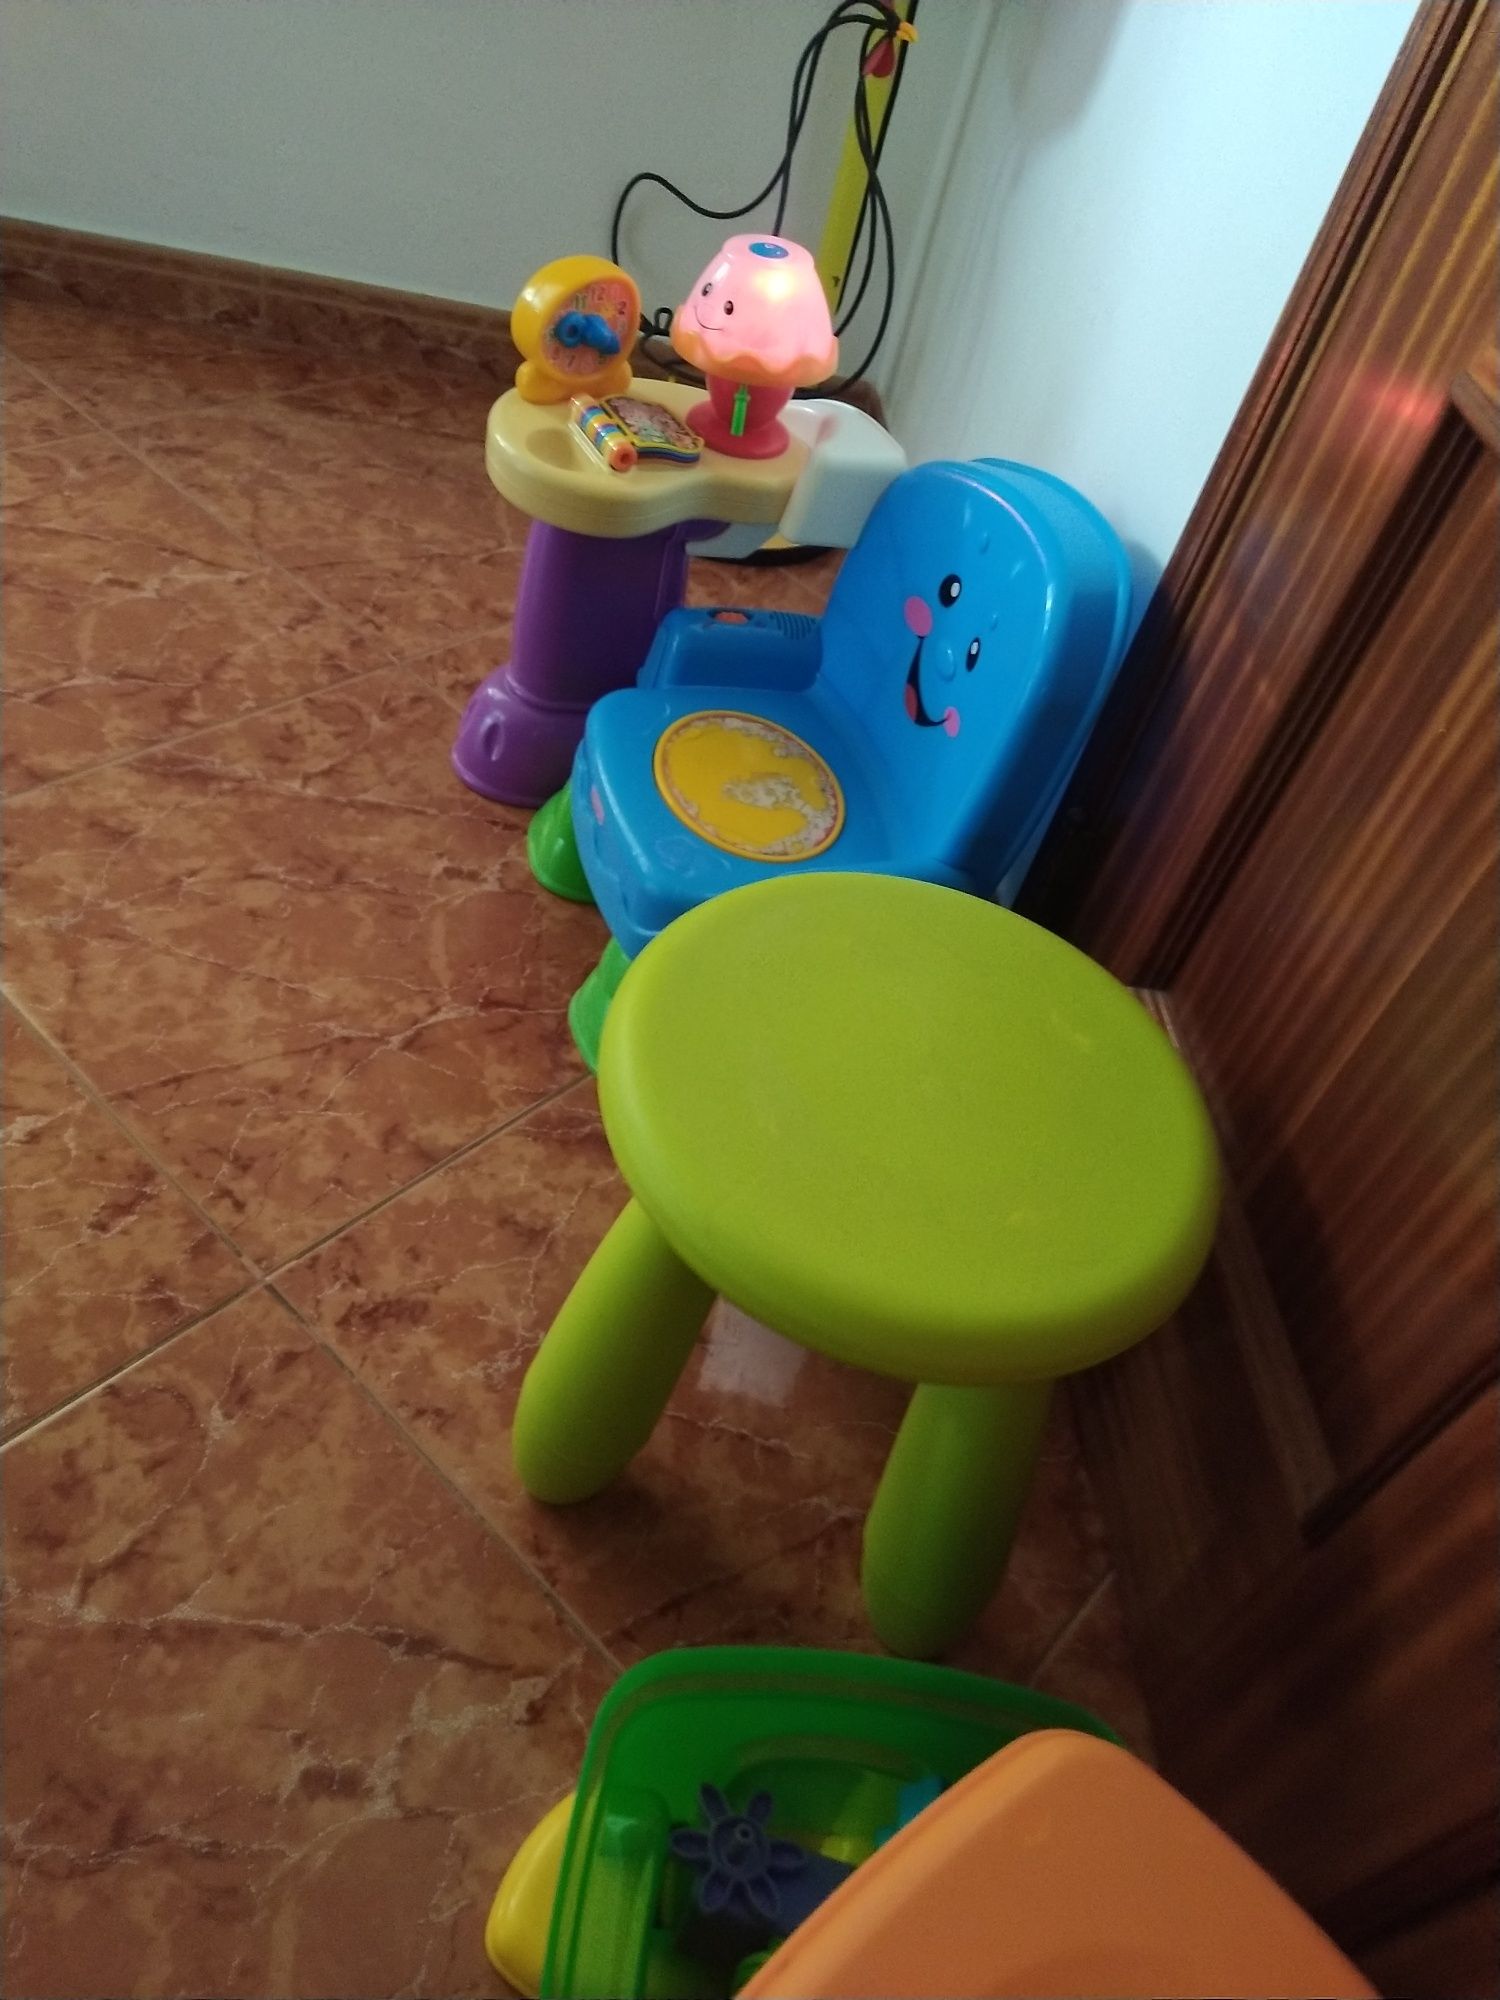 Brinquedos para bebé cadeira musical e bancos casa quarto cozinha.